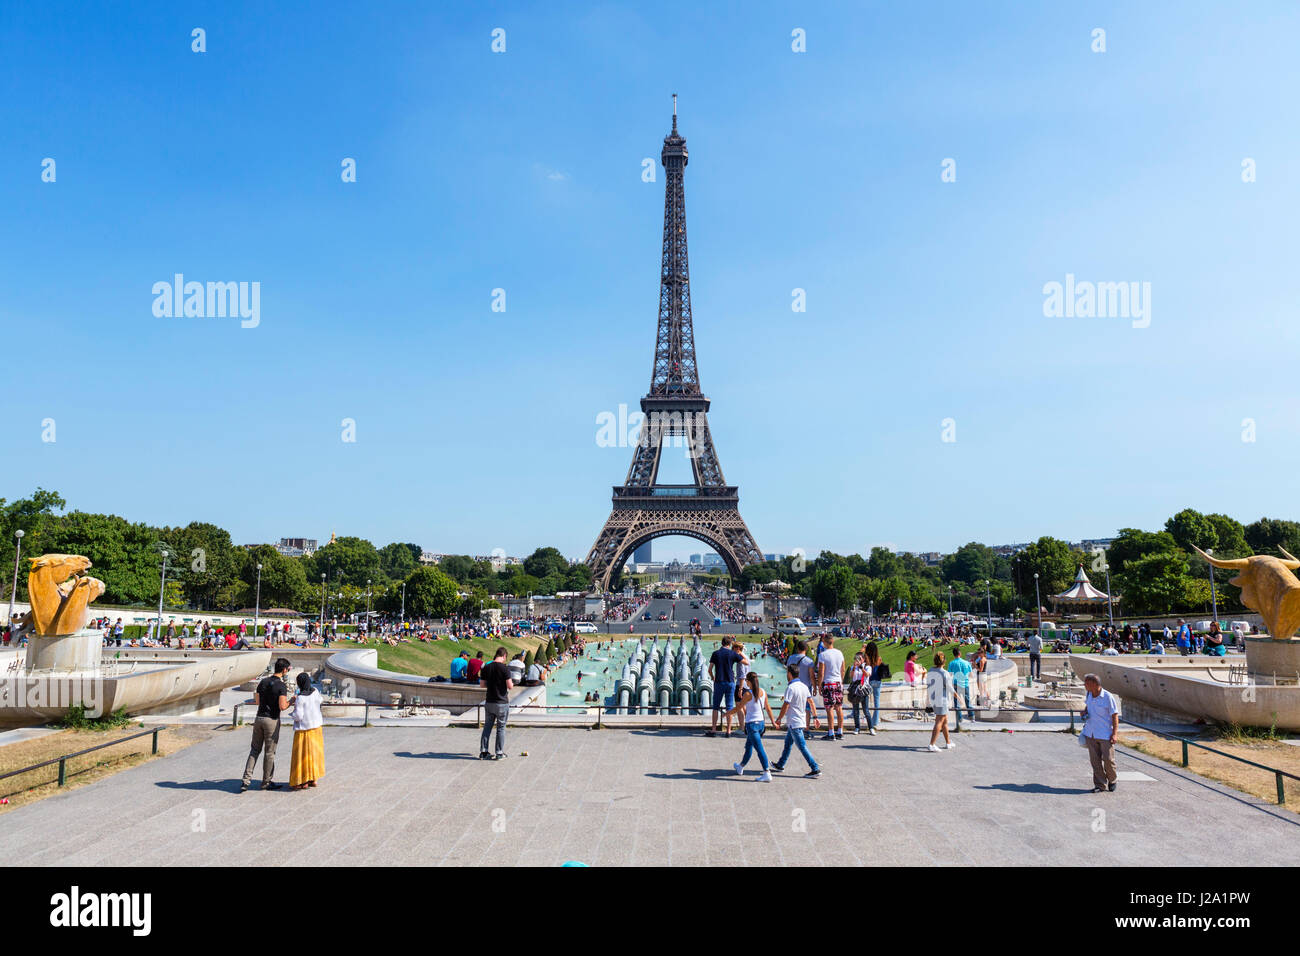 La Tour Eiffel Tower (Tour Eiffel), du Trocadéro, Paris, France Banque D'Images